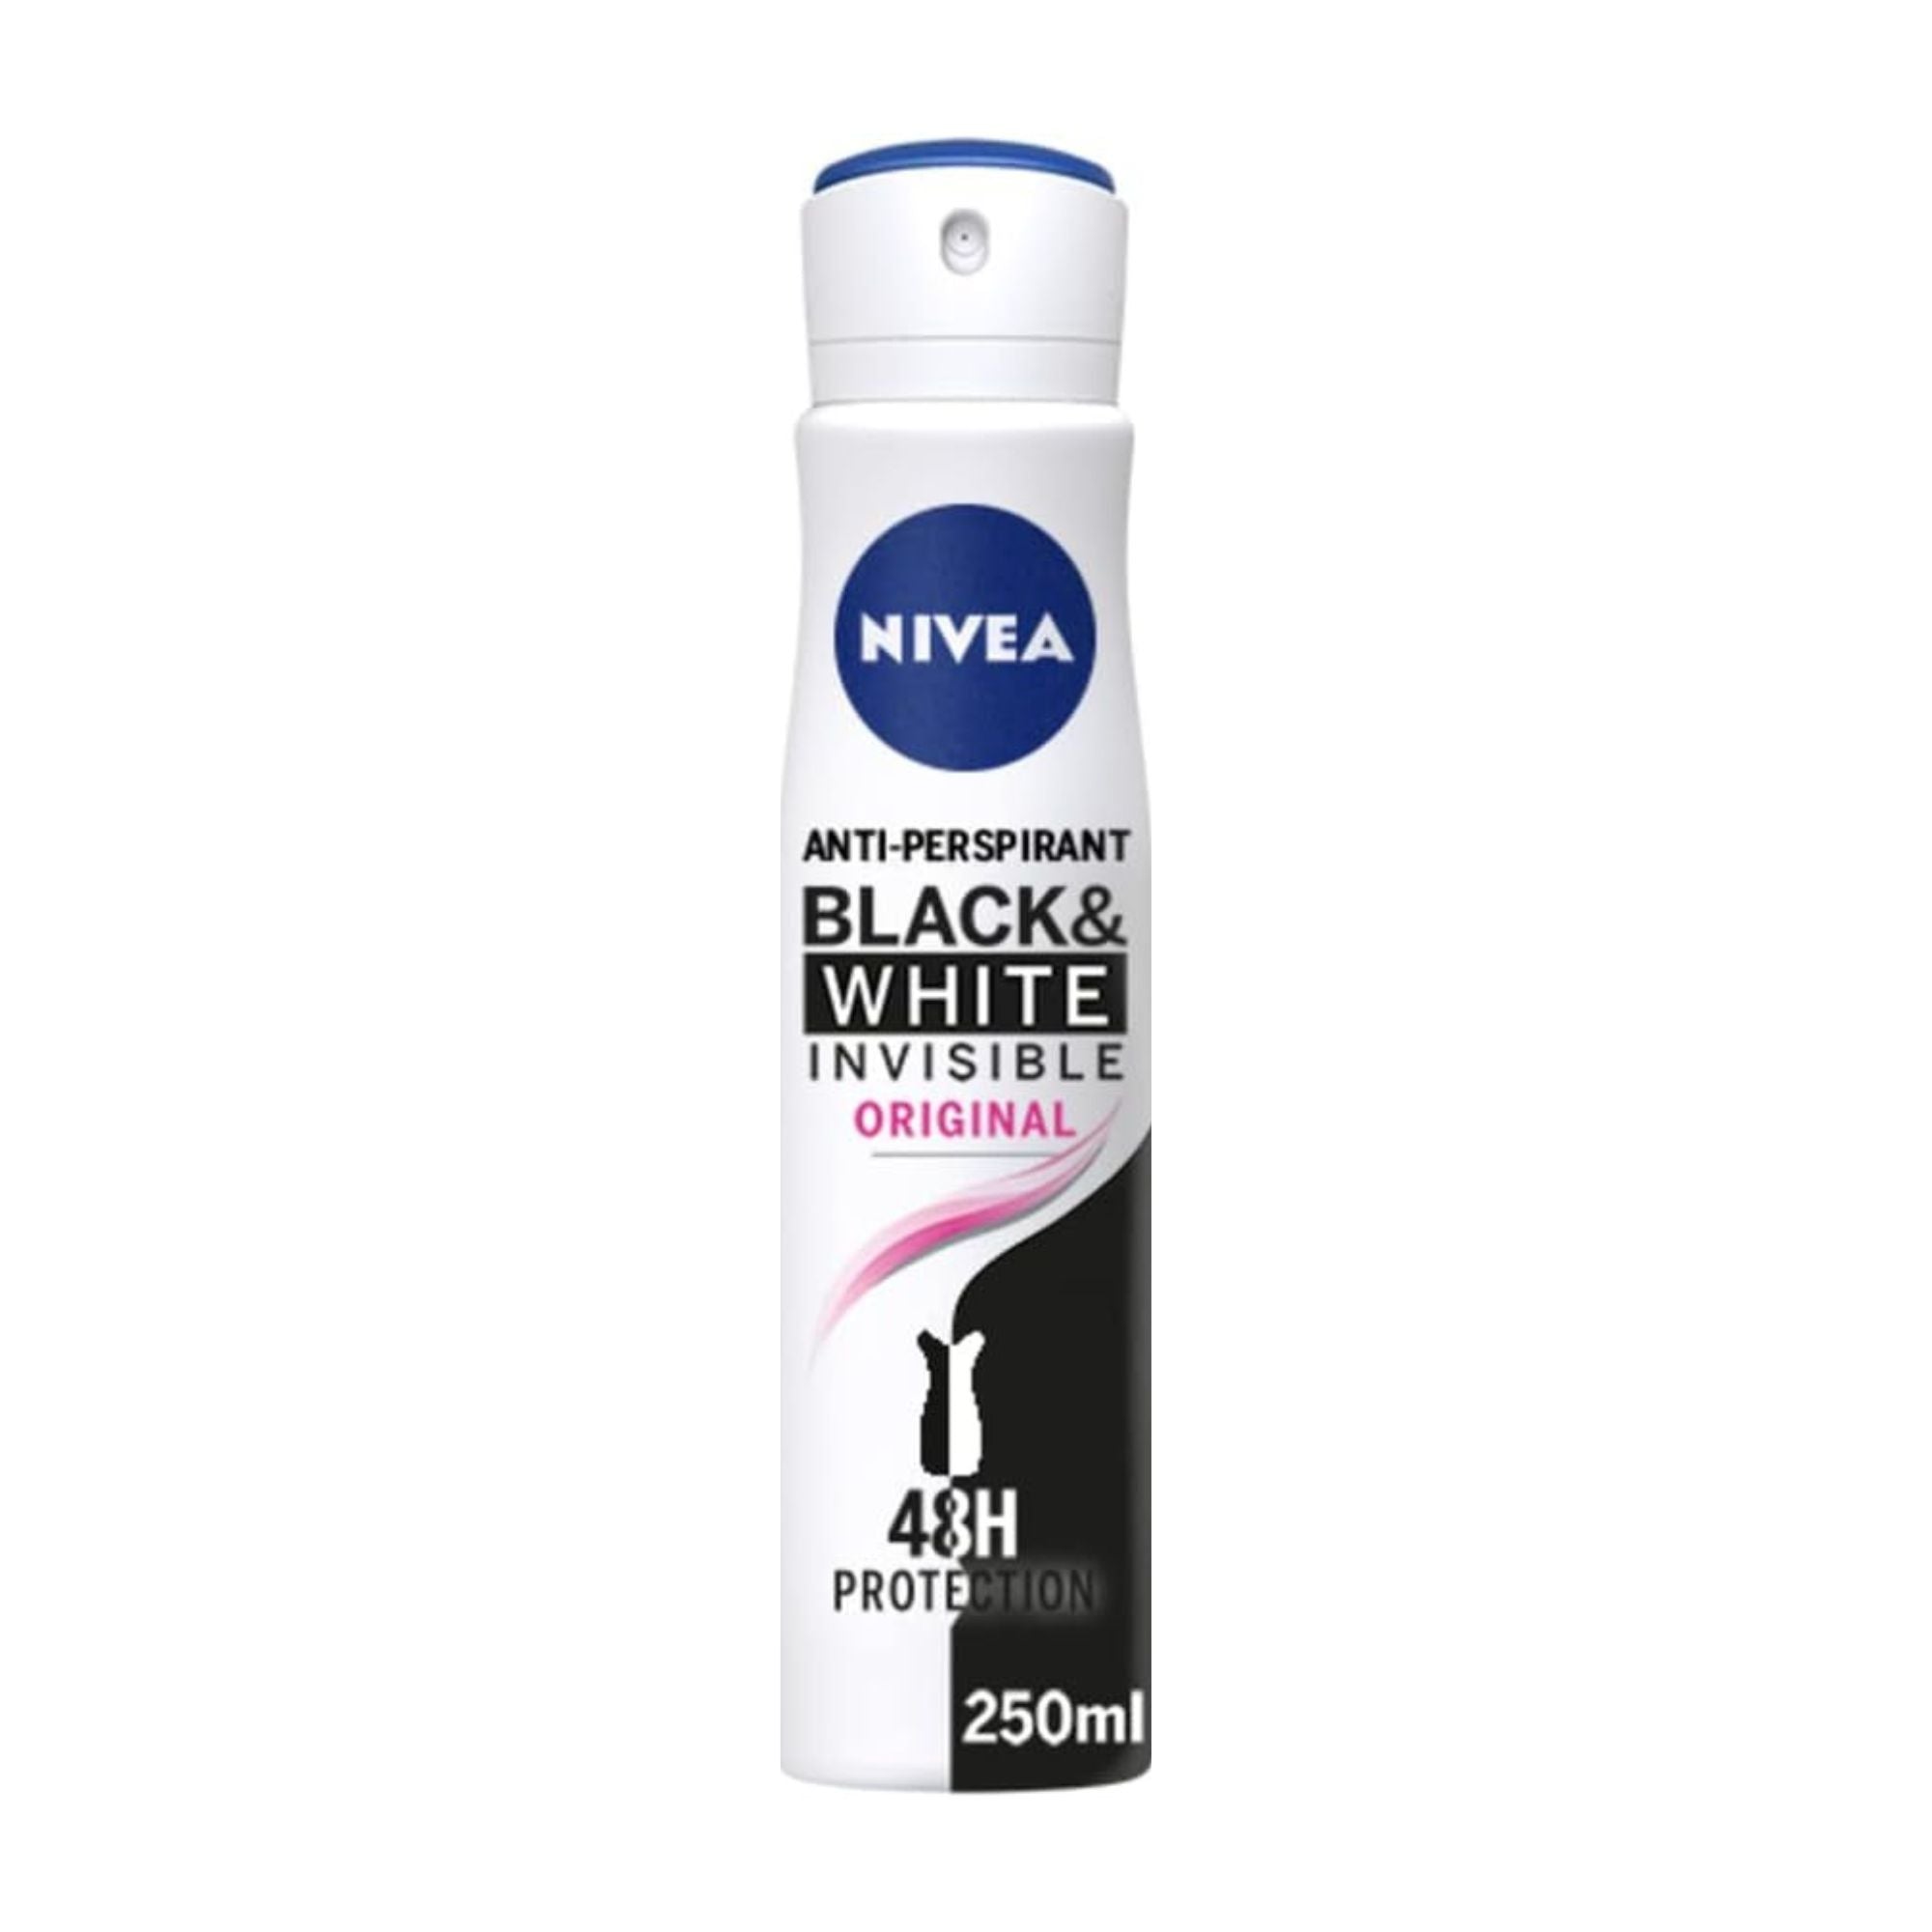 Nivea Anti Perspirant Black And White Invisible Aerosol Spray